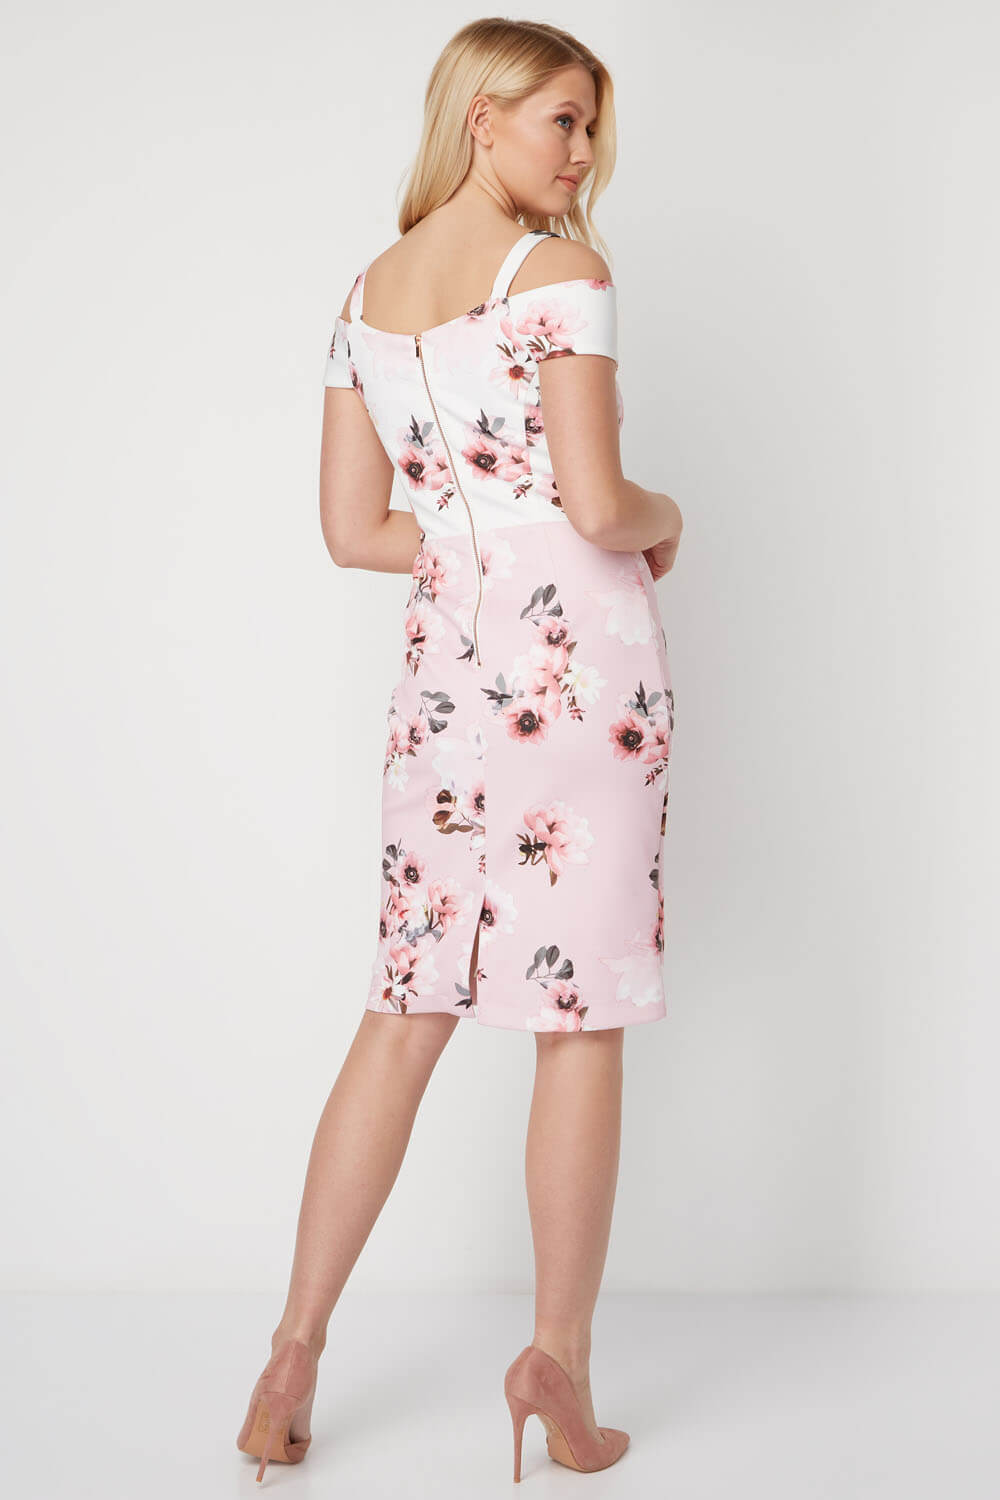 Light Pink Floral Print Cold Shoulder Dress, Image 3 of 5